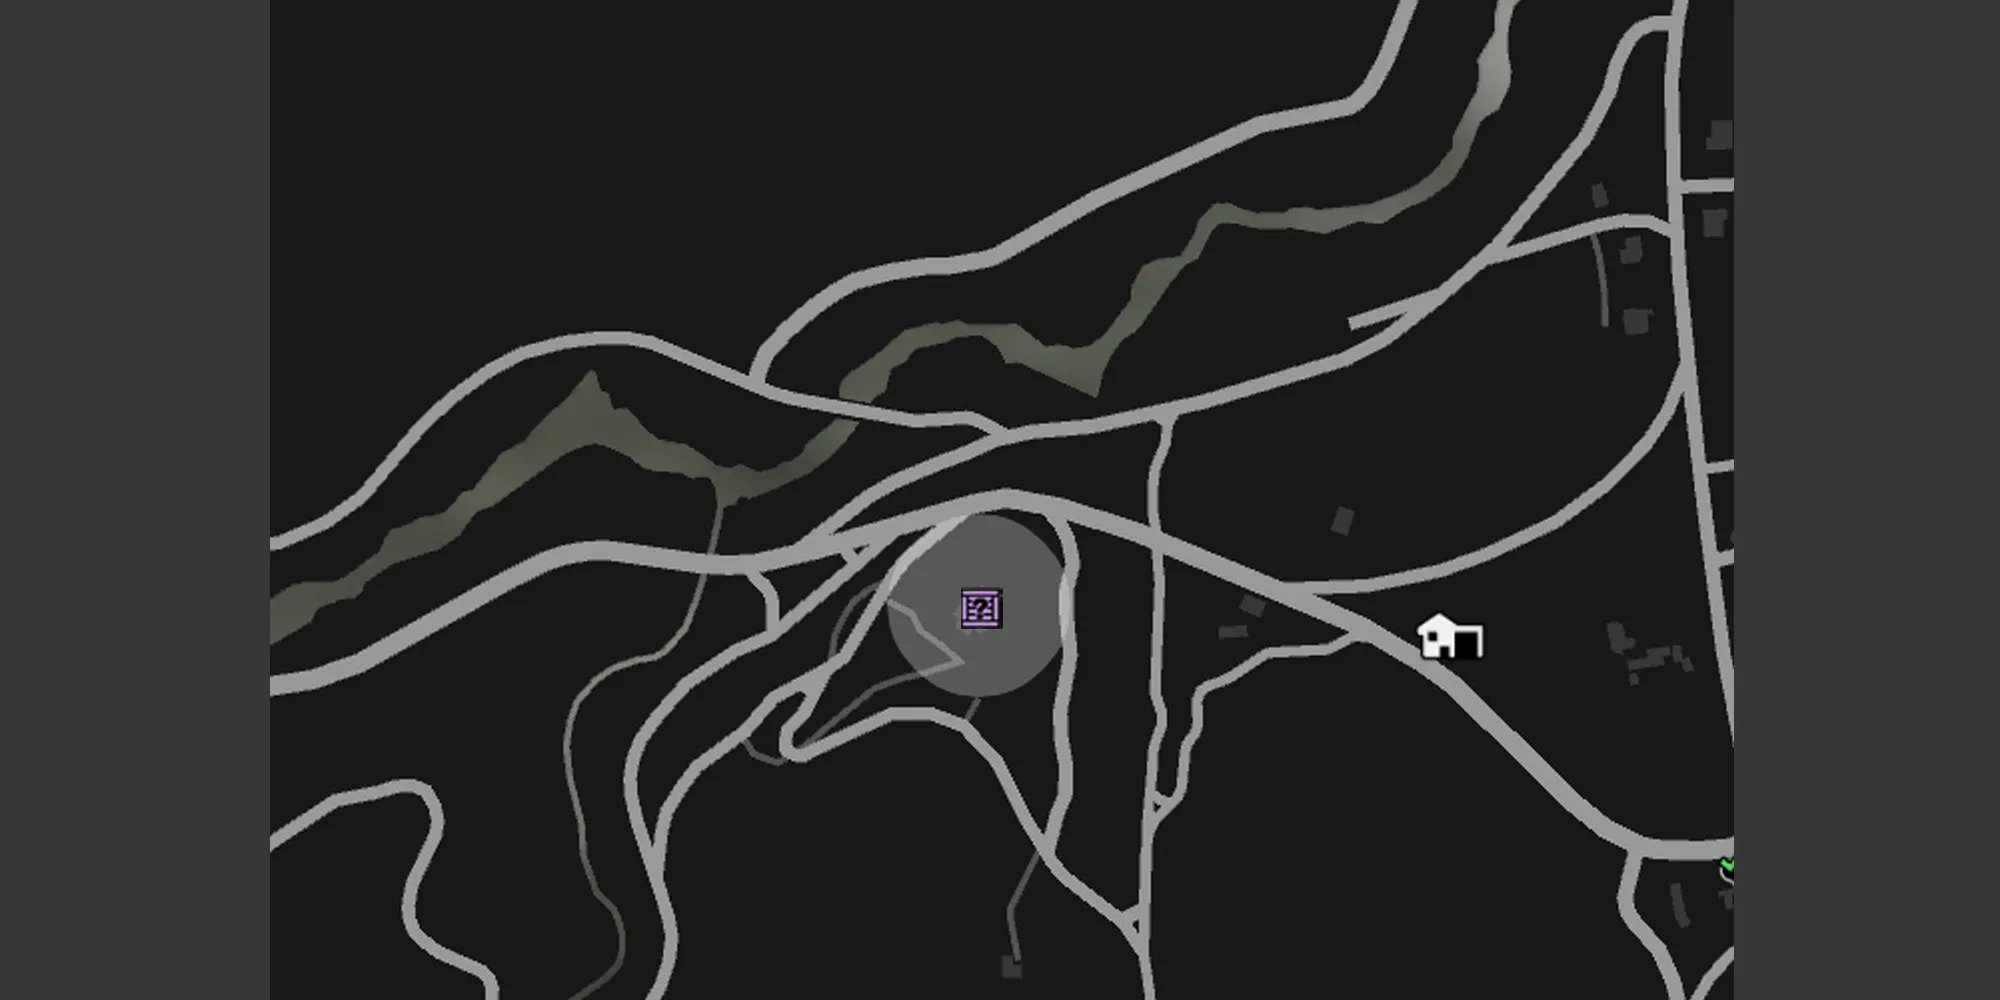 画像は、GTA Onlineの地図上のヒルバレー教会を示す灰色の円と紫色のG's Cacheの木箱のアイコンが表示されています。